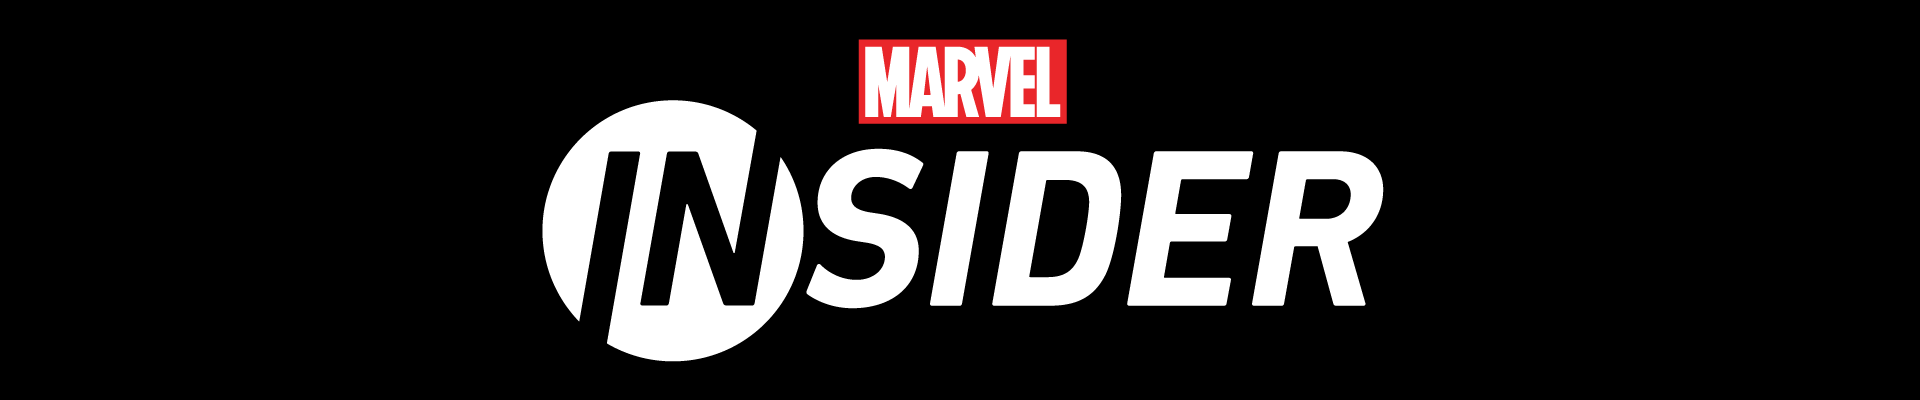 Top_Marvel Insider